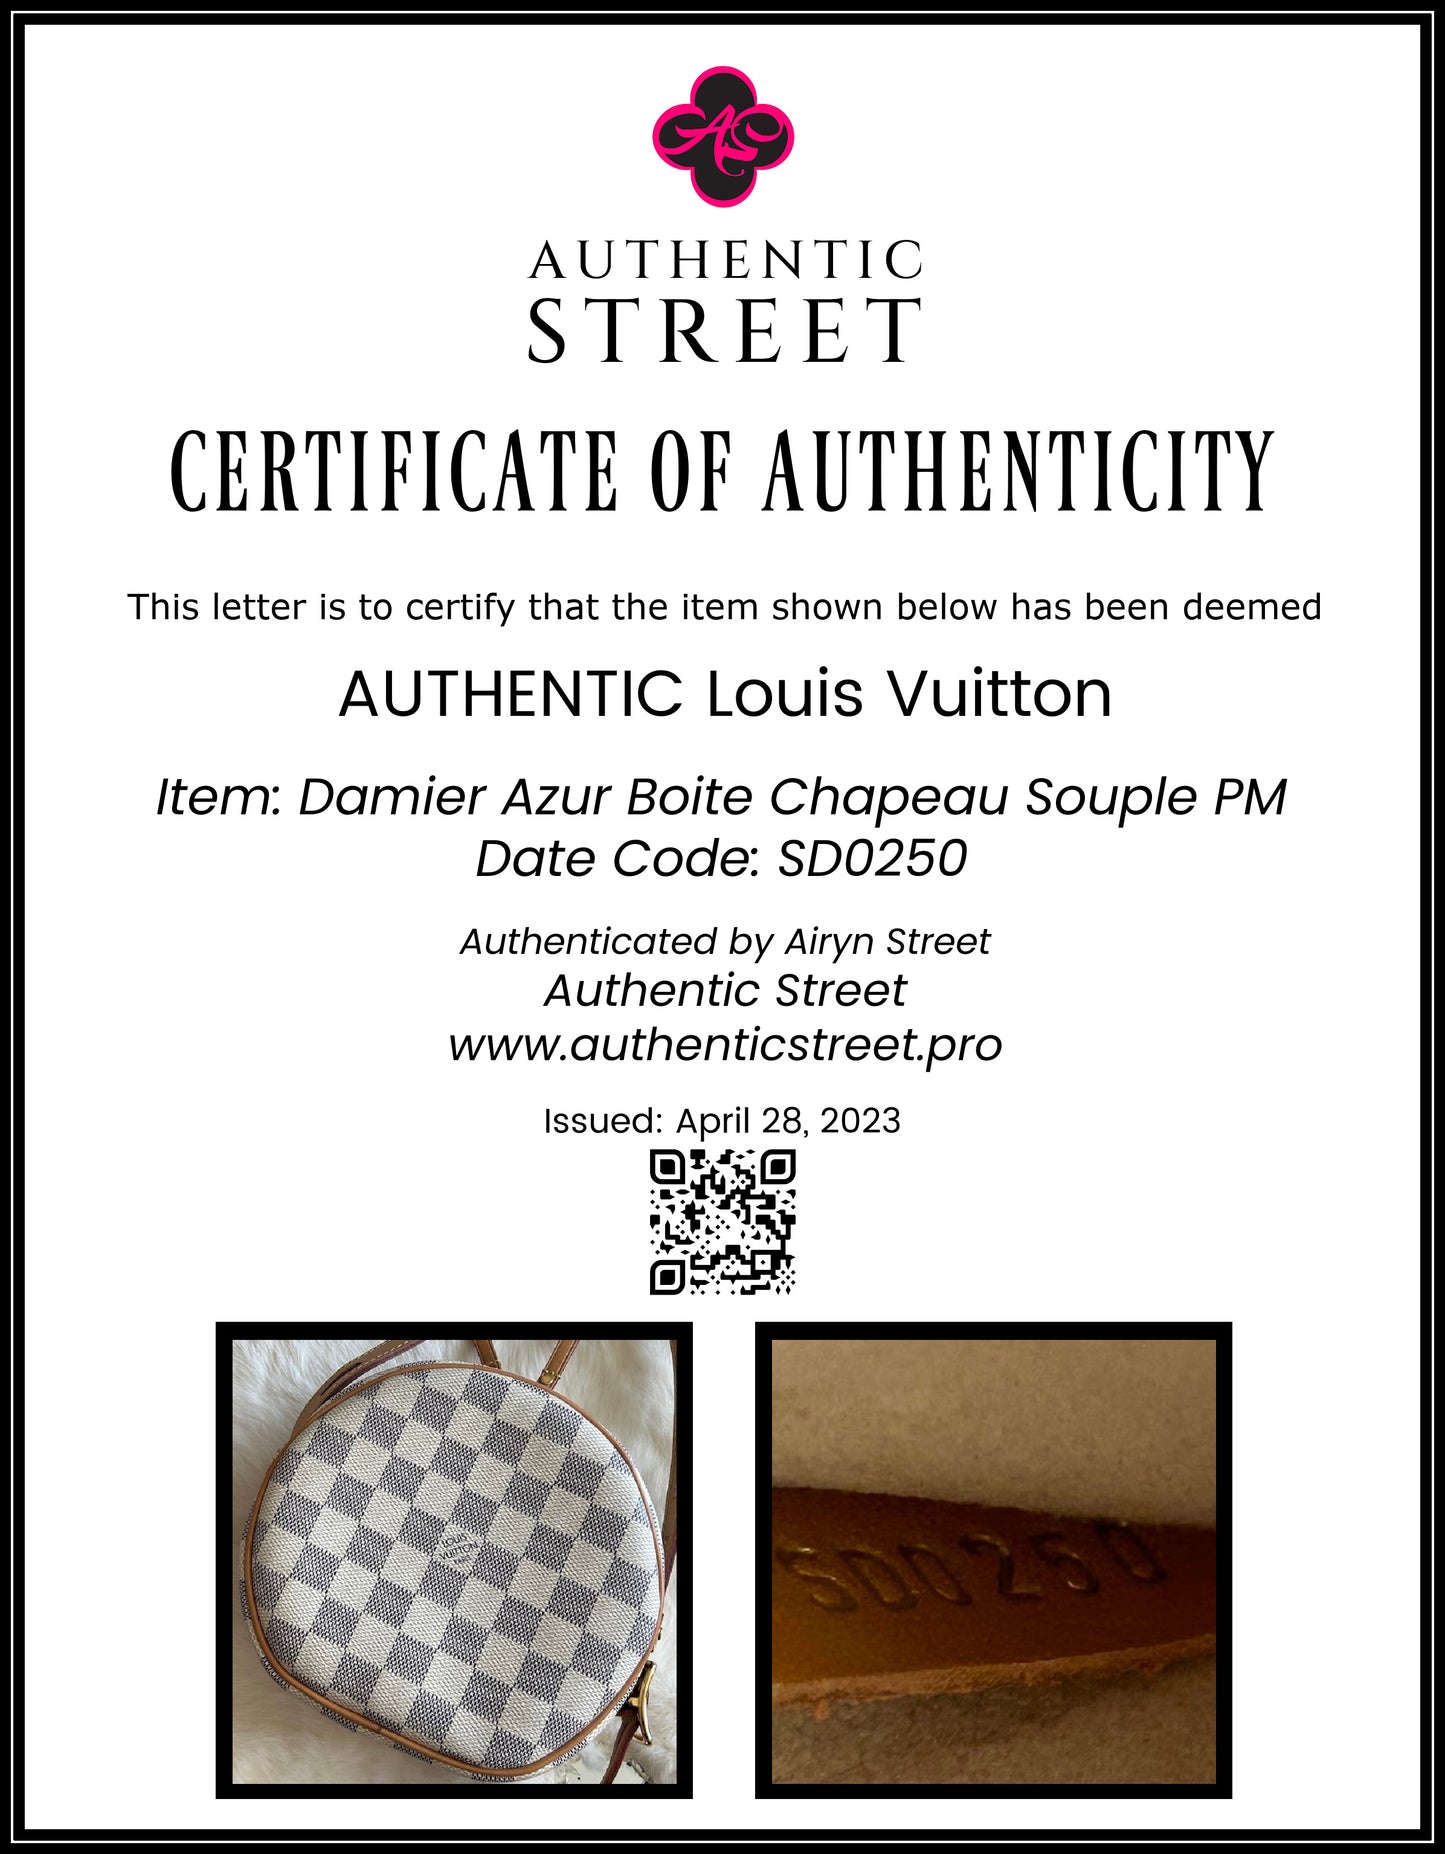 Authentic Louis Vuitton Boite Chapeau Souple PM in Damier Azur